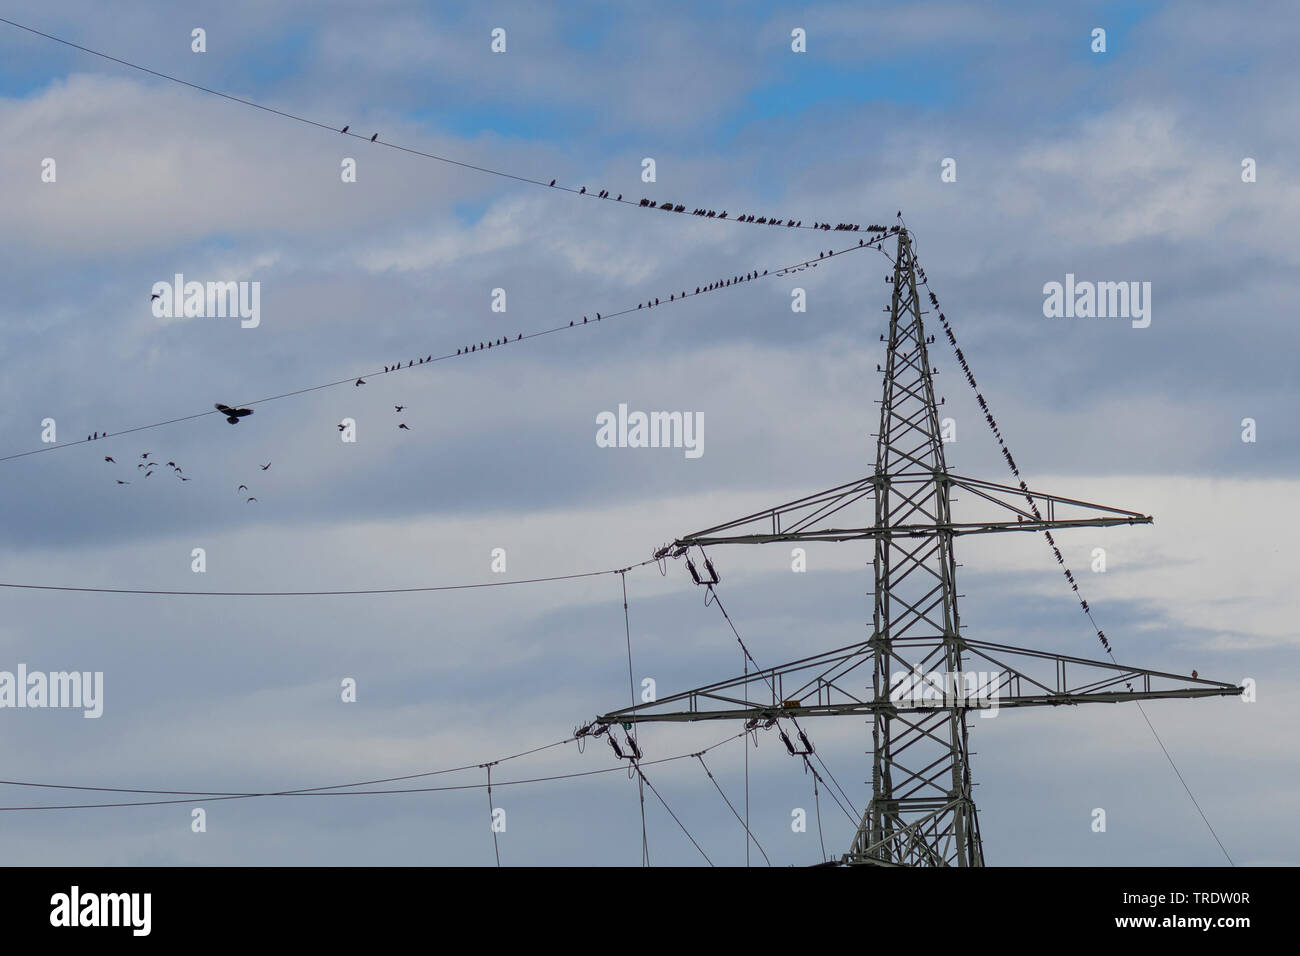 Starling comune (Sturnus vulgaris), trooping fino per la migrazione degli uccelli su una linea ad alta tensione, vengono attaccati da un carrion crow, in Germania, in Baviera, Isental Foto Stock